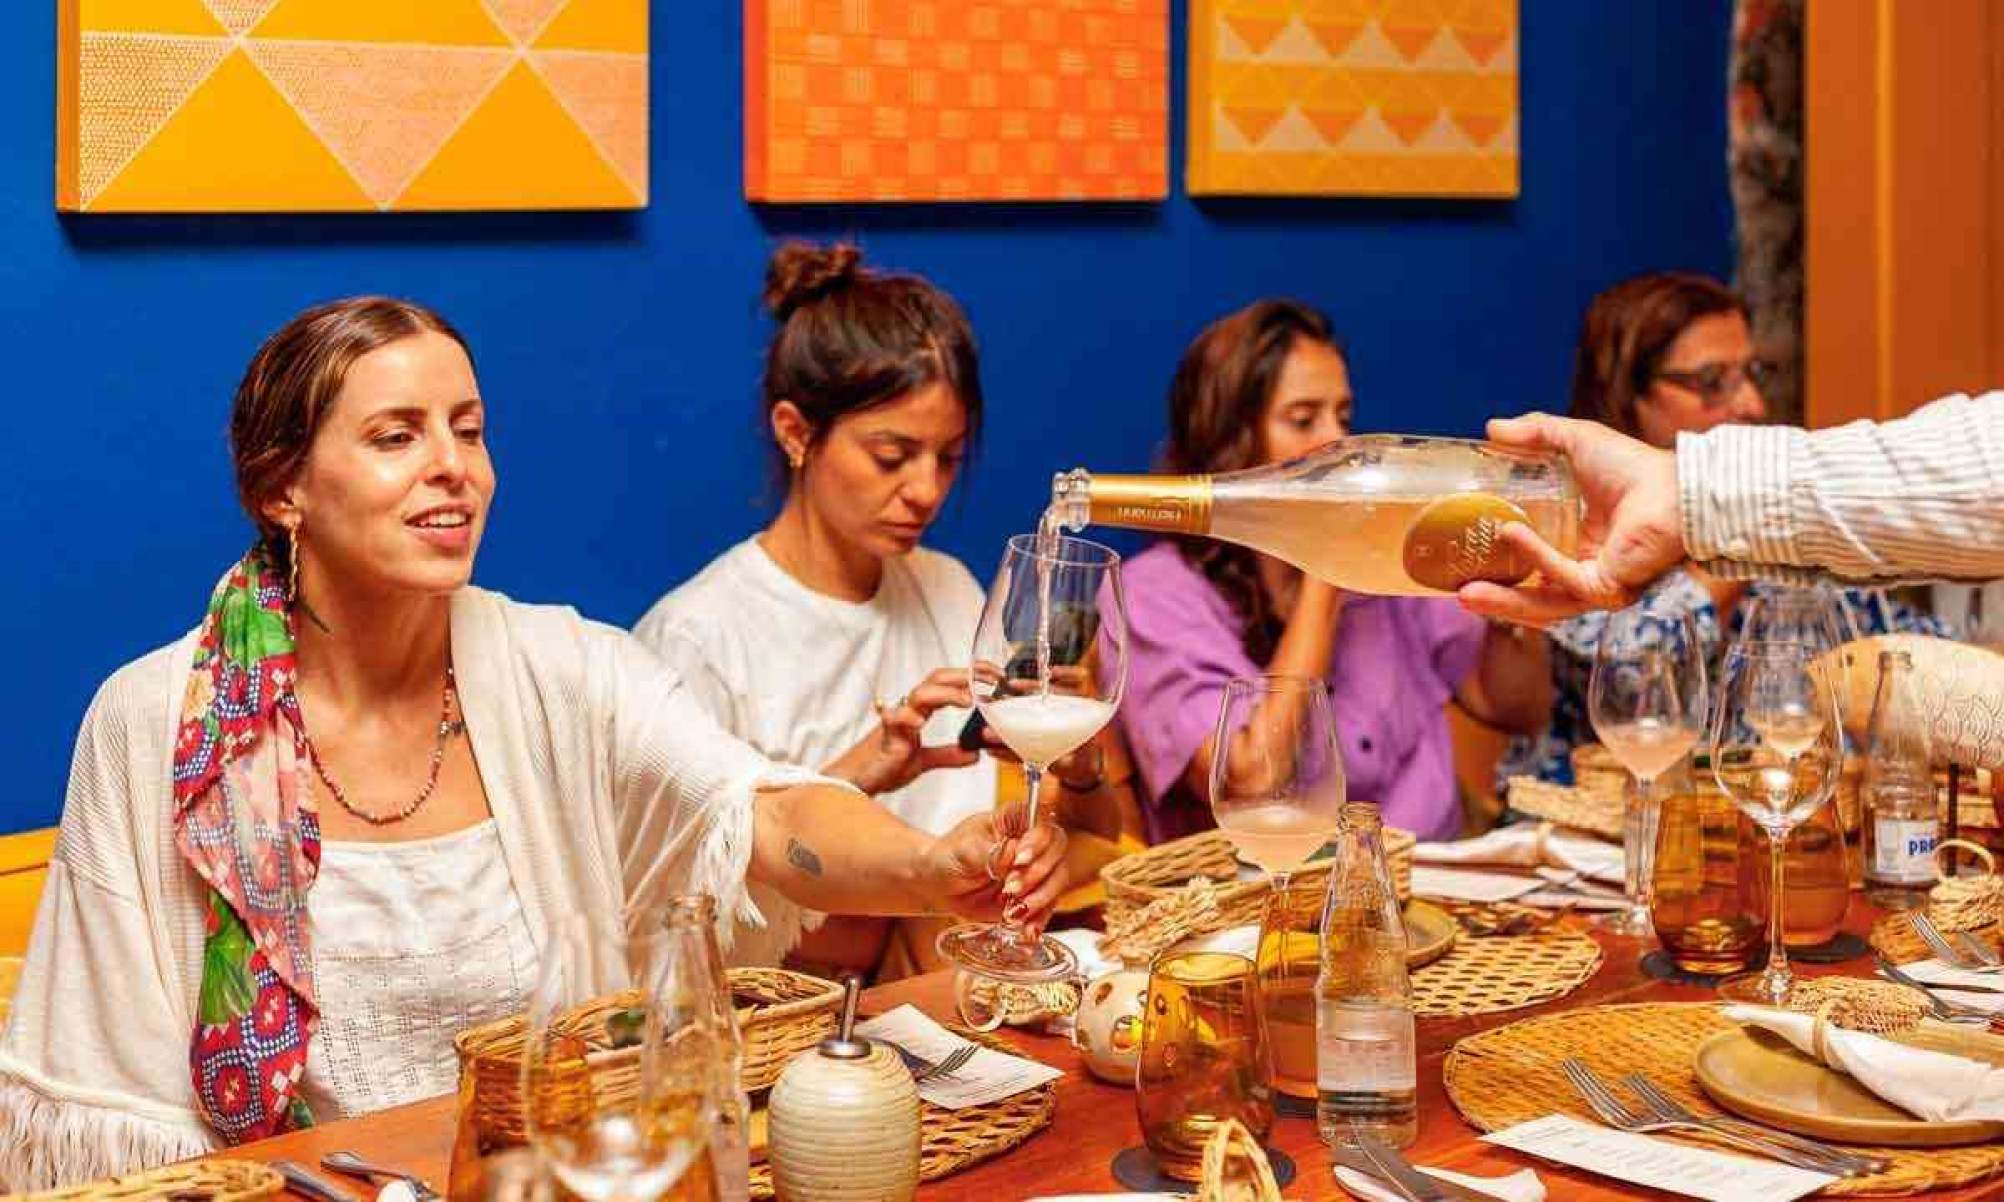 Projeto "Caravana Paratiana", do restaurante Banana da Terra, promove encontros com chefs em jantares  harmonizados com bons vinhos